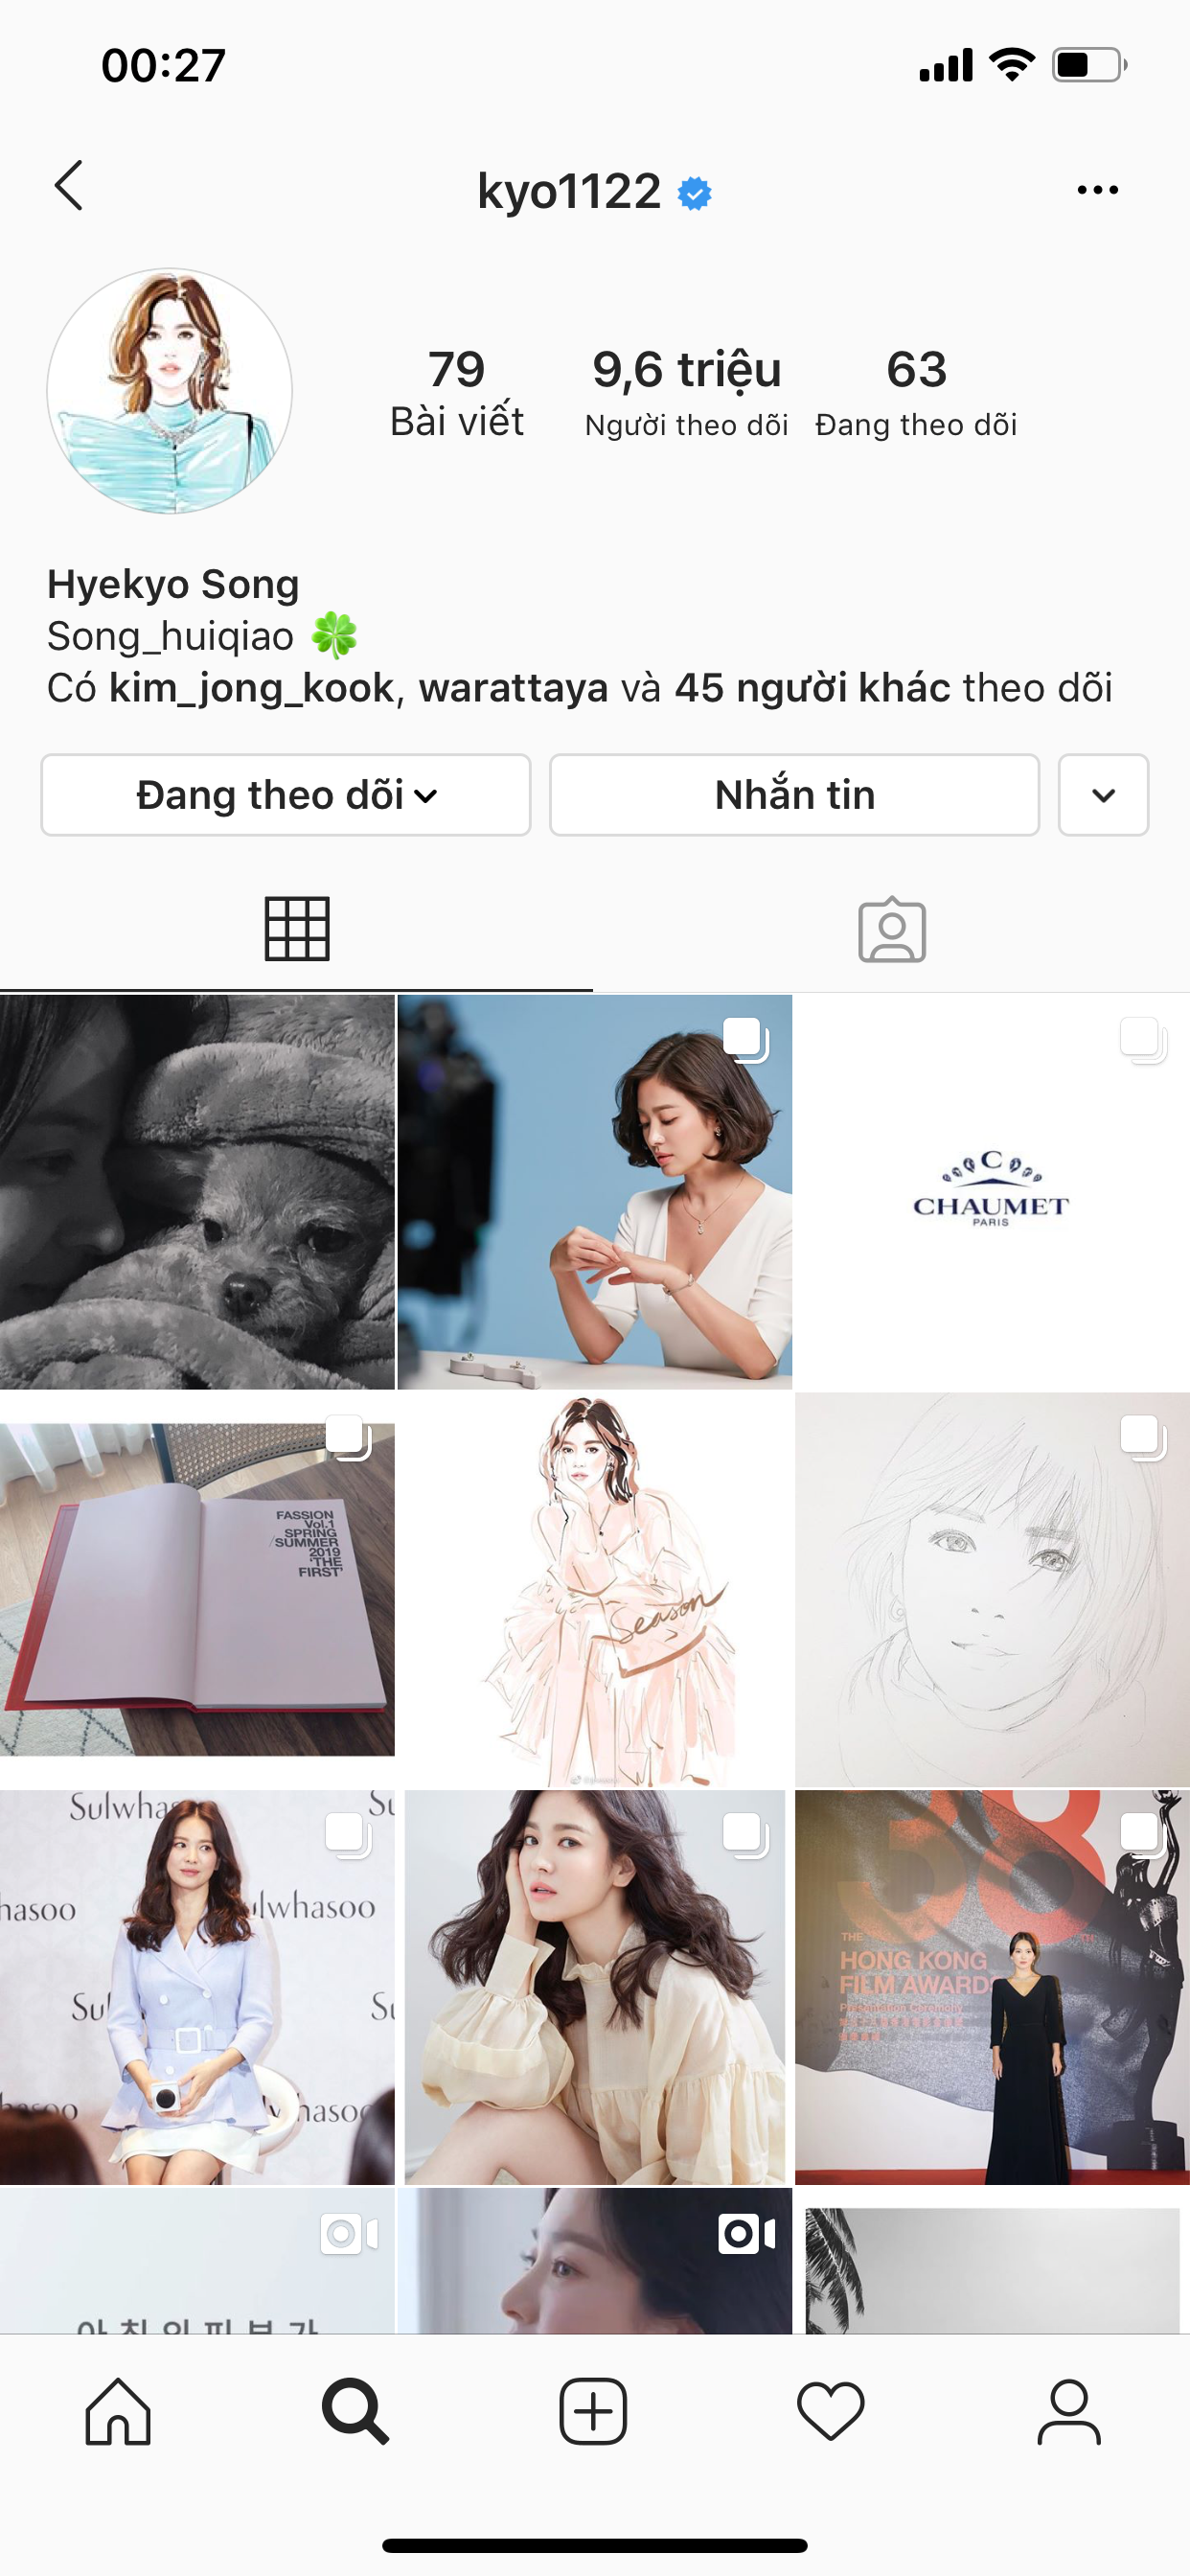 20.Song Hye Kyo khai tử ảnh cưới, toàn bộ dấu vết về chồng trên Instagram